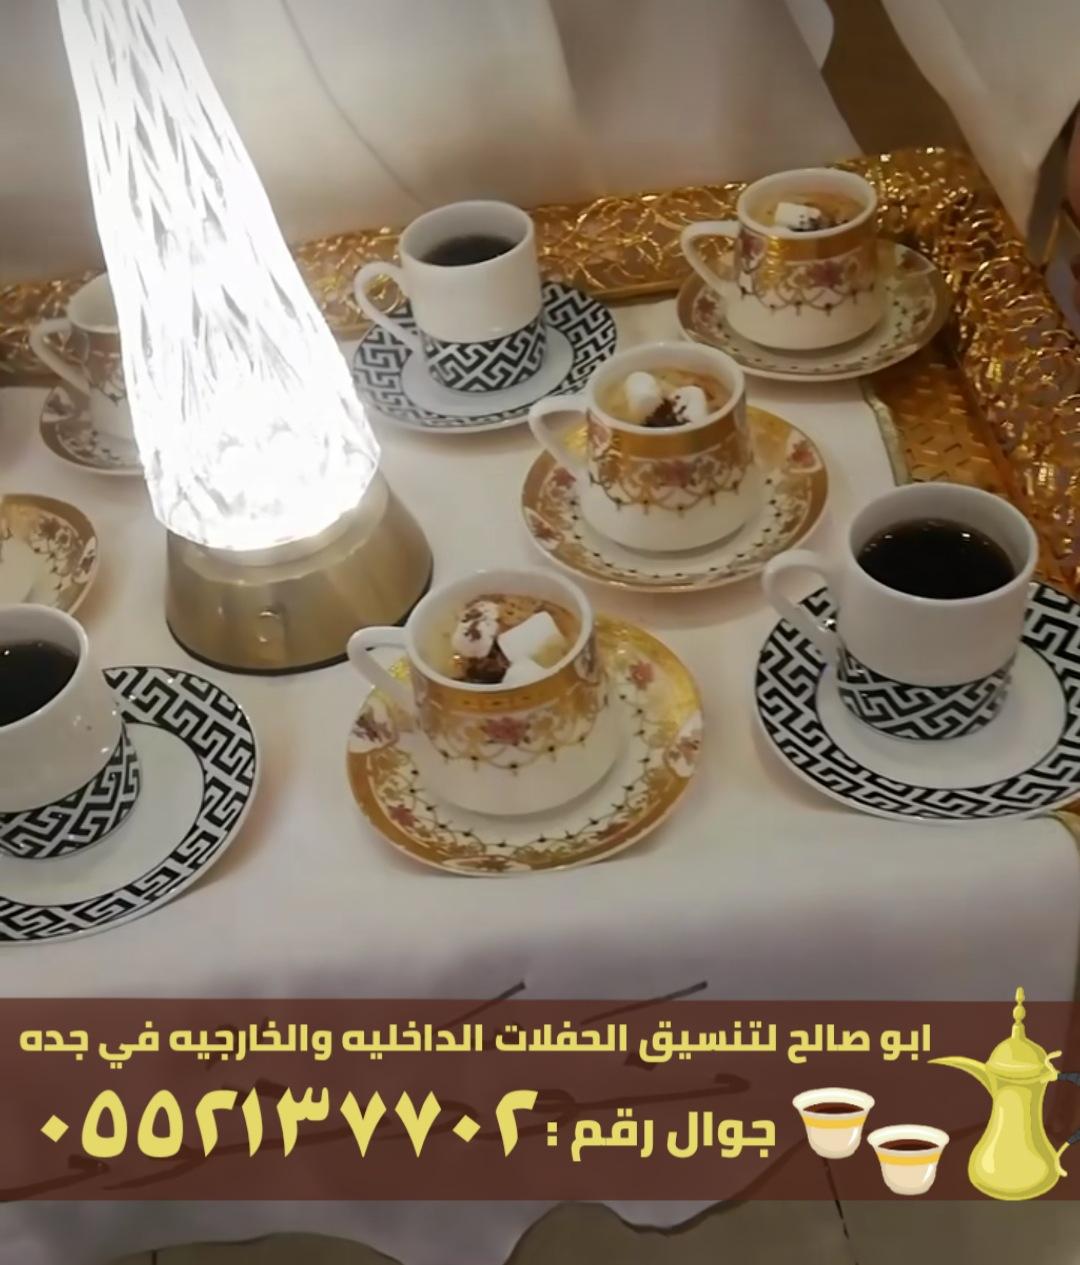 مباشرين و صبابين قهوة في جدة,0552137702 522828944